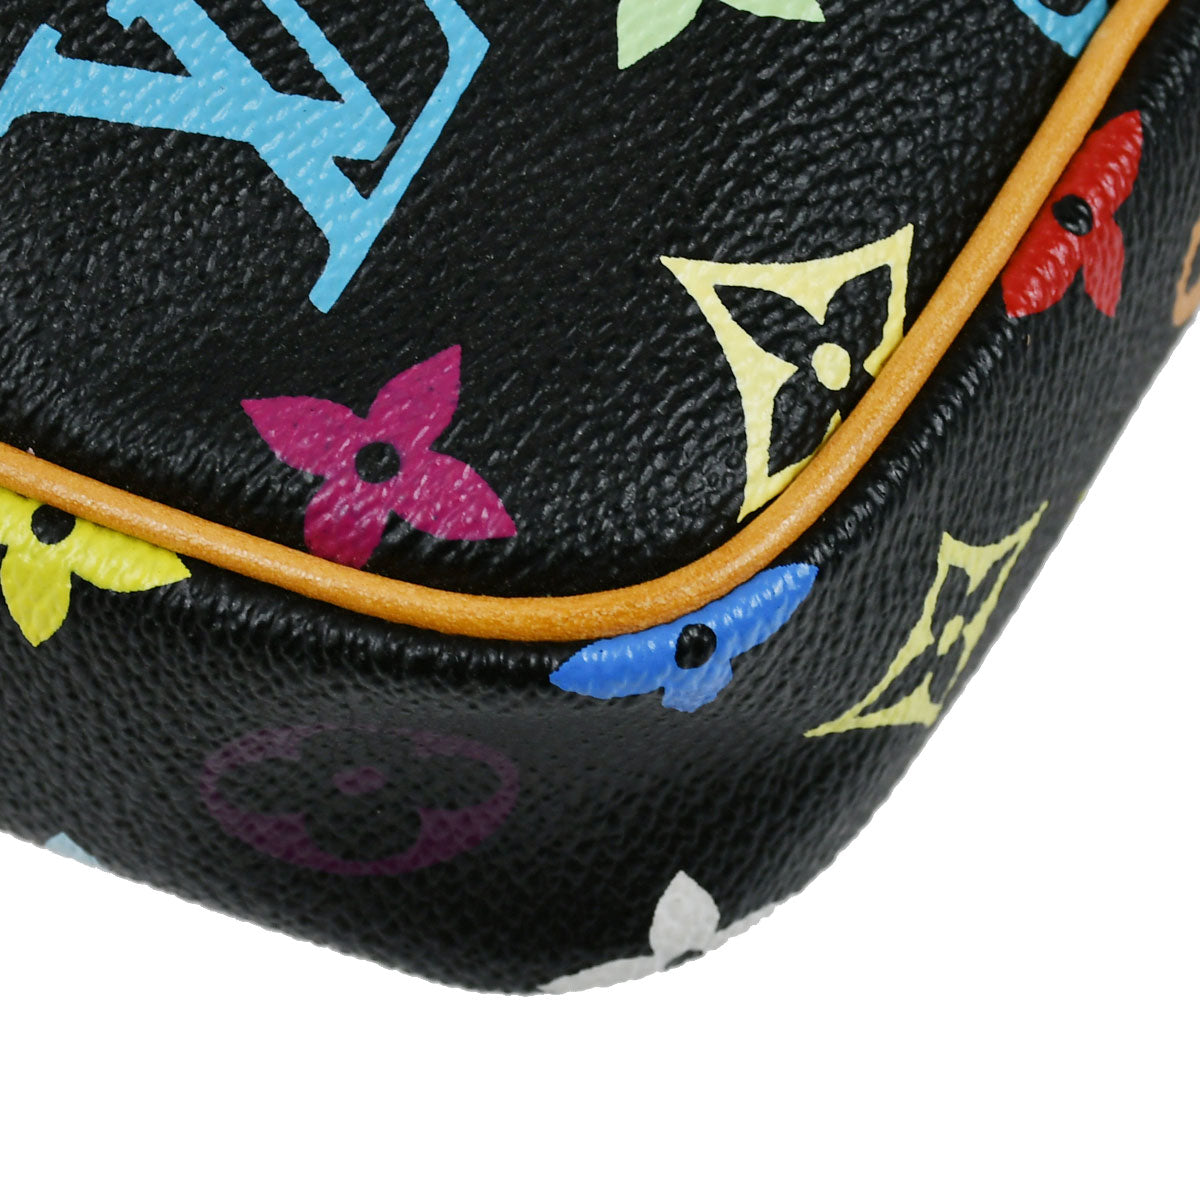 Louis Vuitton Rift Shoulder Bag Th1015 Purse Monogram Multi Color